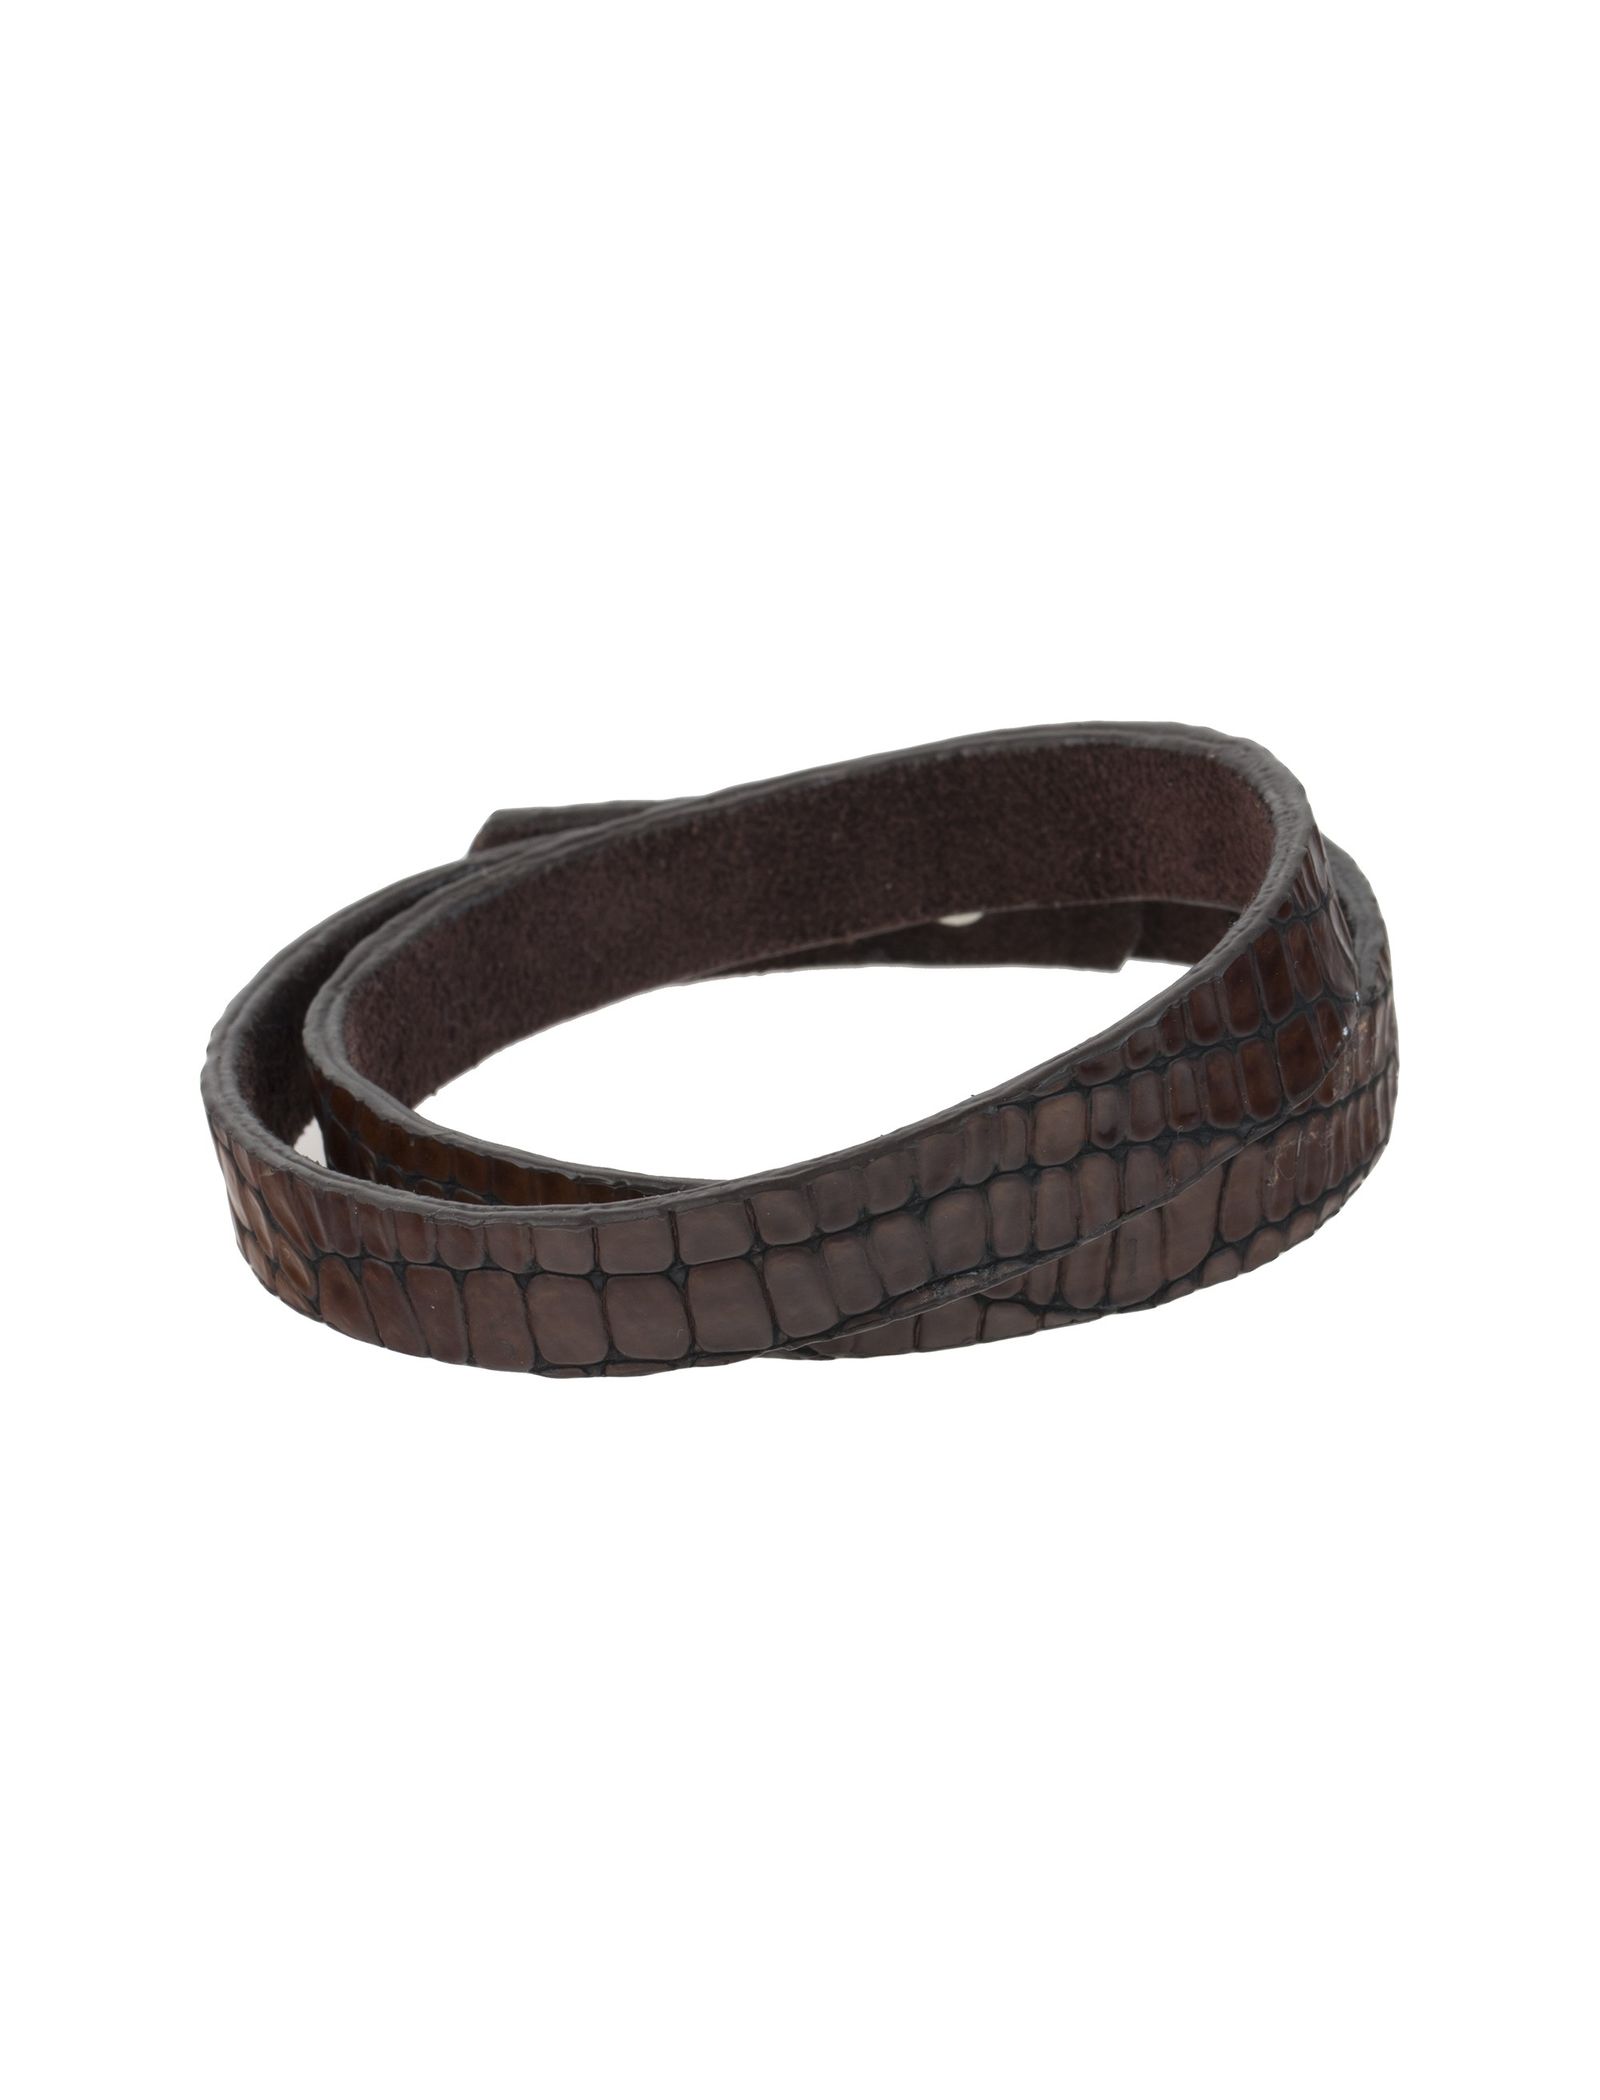 دستبند چرم مردانه - ماکو دیزاین سایز 43 cm - قهوه اي - 2